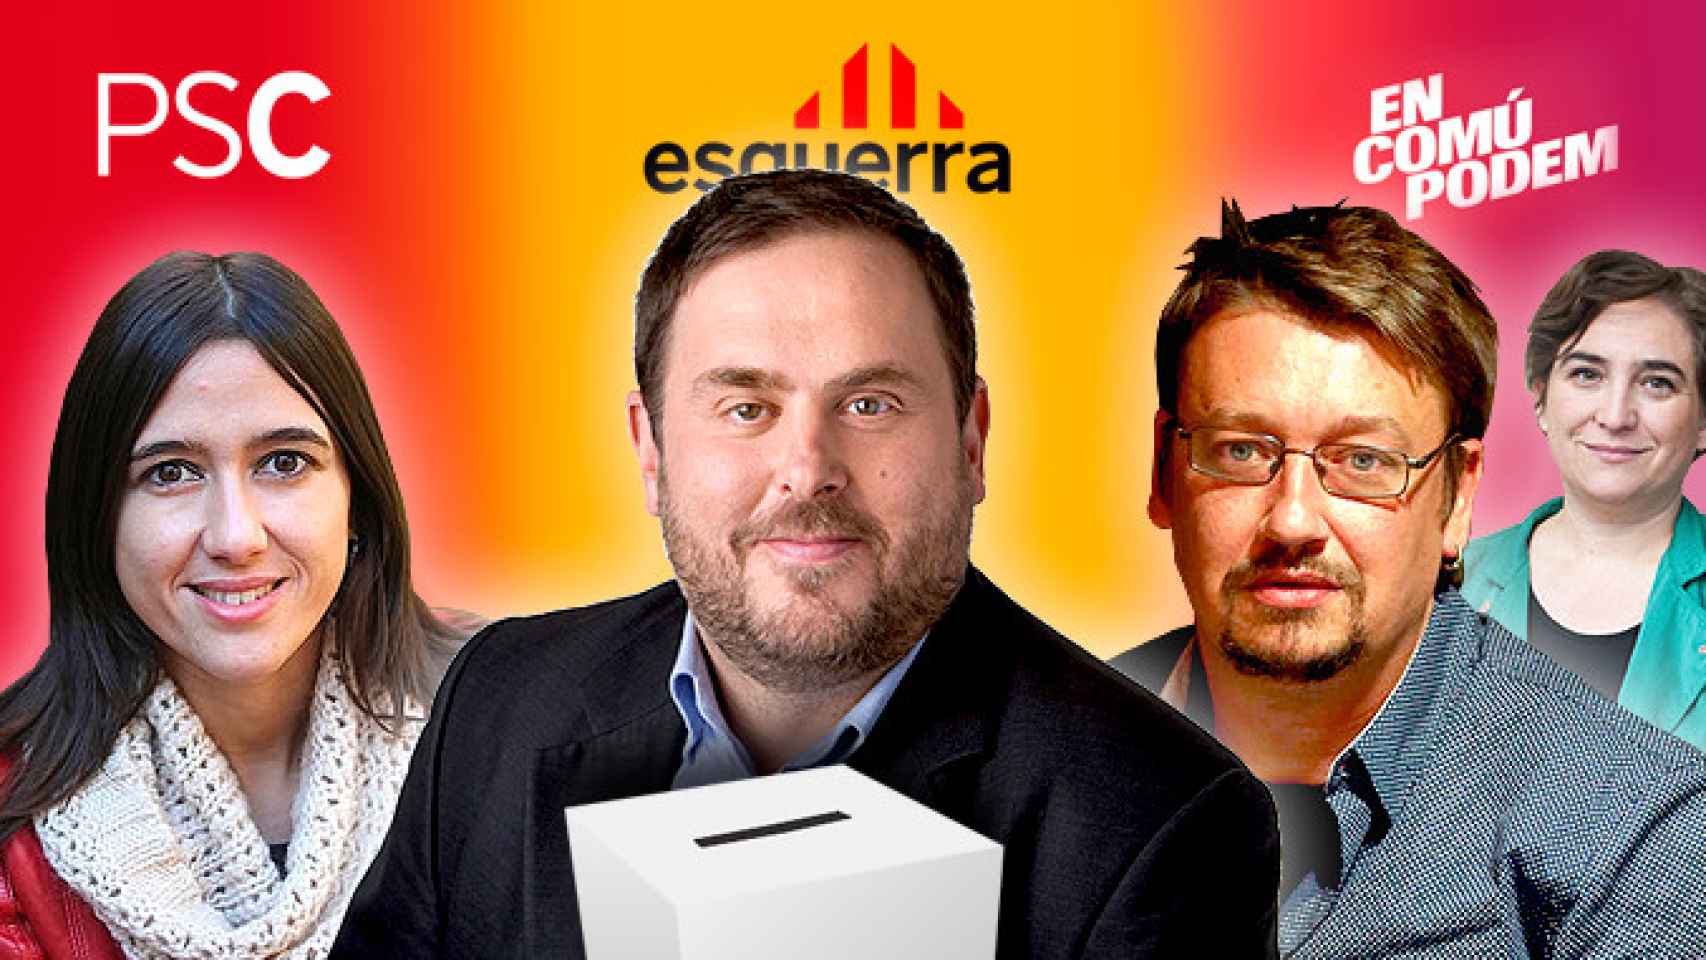 Núria Parlon (PSC), Oriol Junqueras (ERC) y Xavier Domènech (En Comú Podem), un posible tripartito de izquierdas con Ada Colau en la sombra / FOTOMONTAJE DE CG